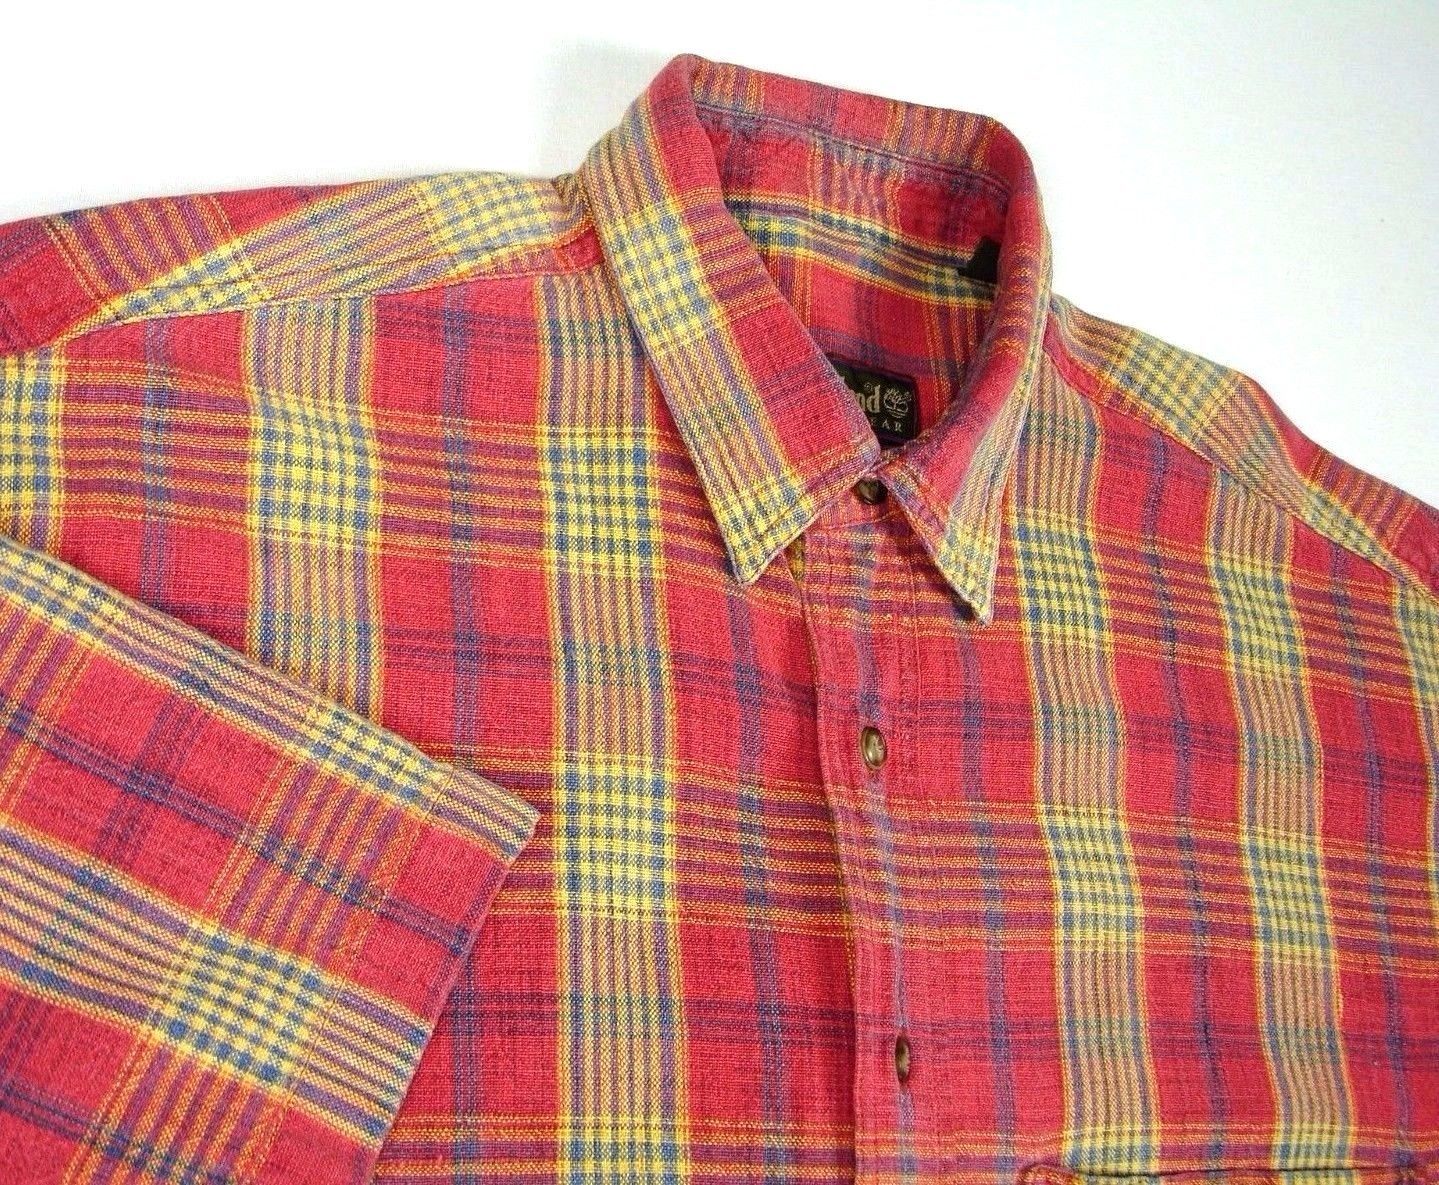 timberland weathergear shirt